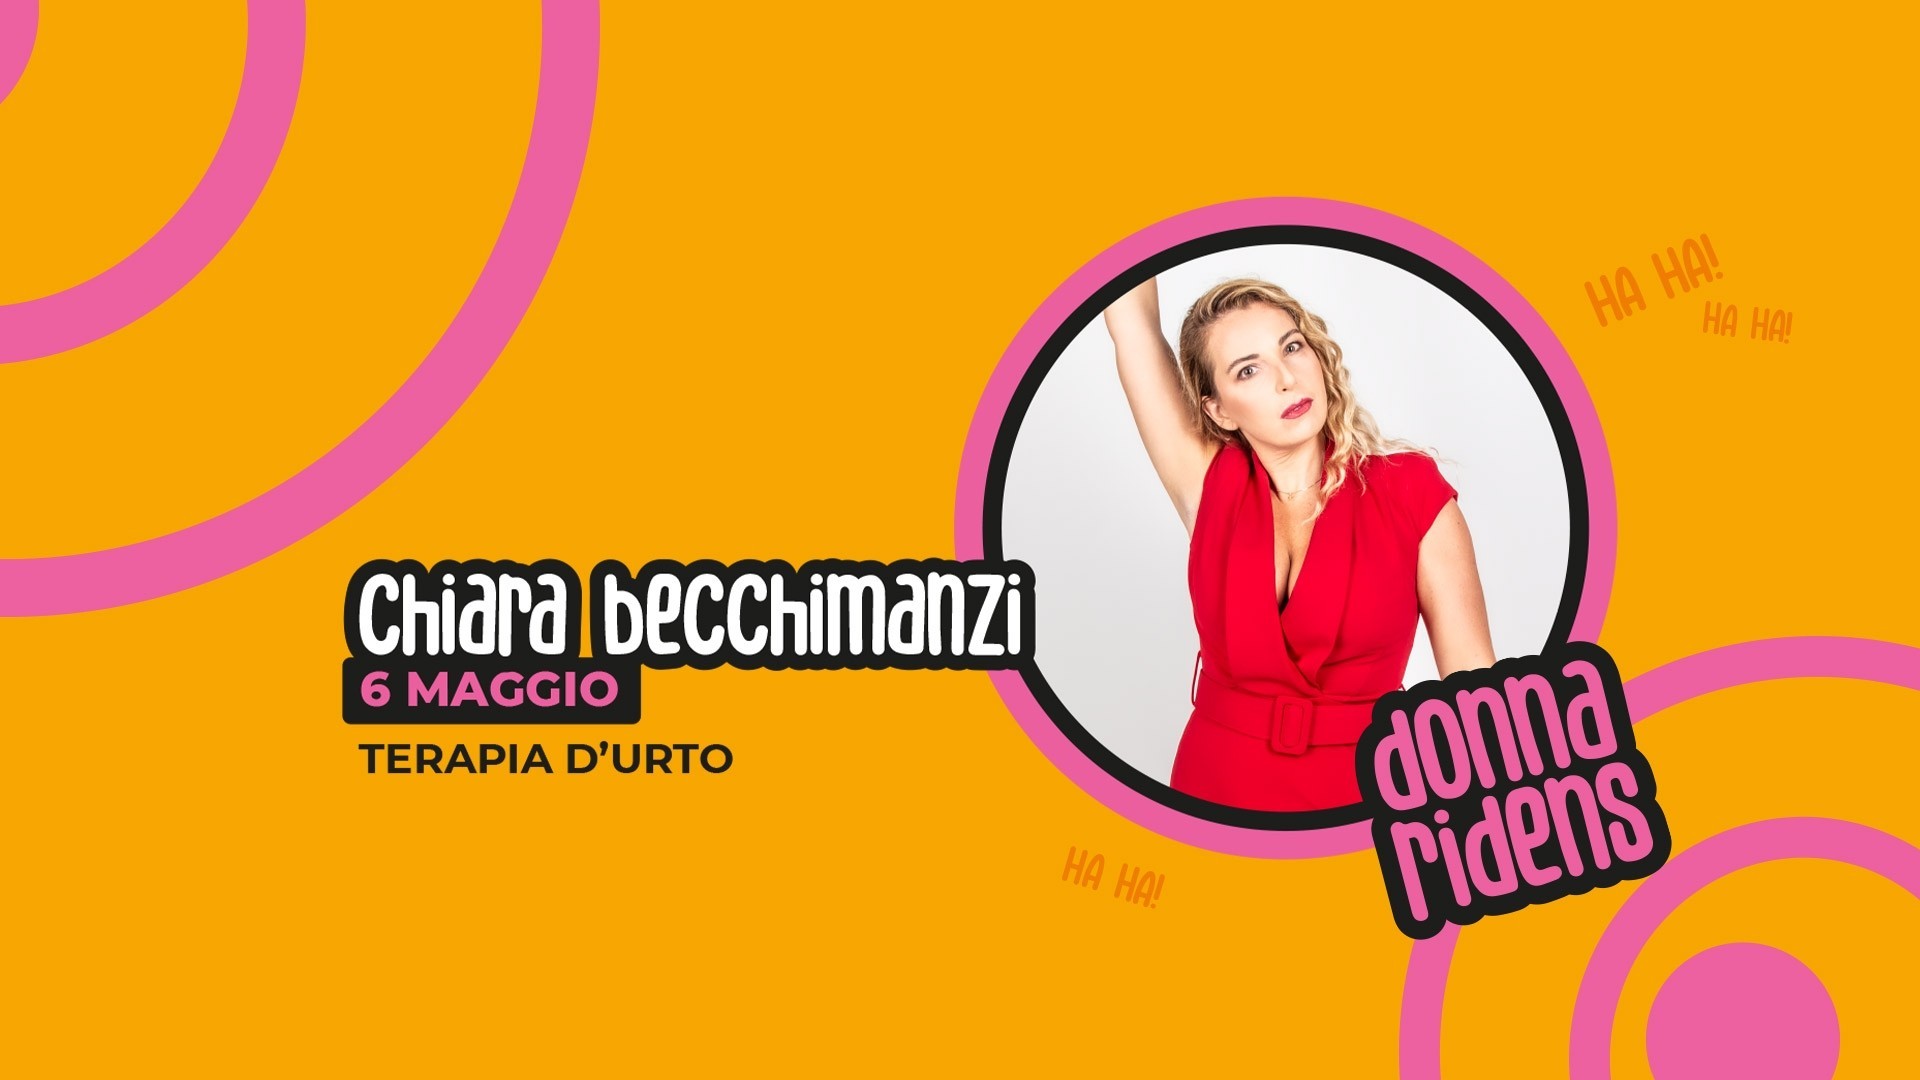 Chiara Becchimanzi il nuovo spettacolo "Terapia d’urto"